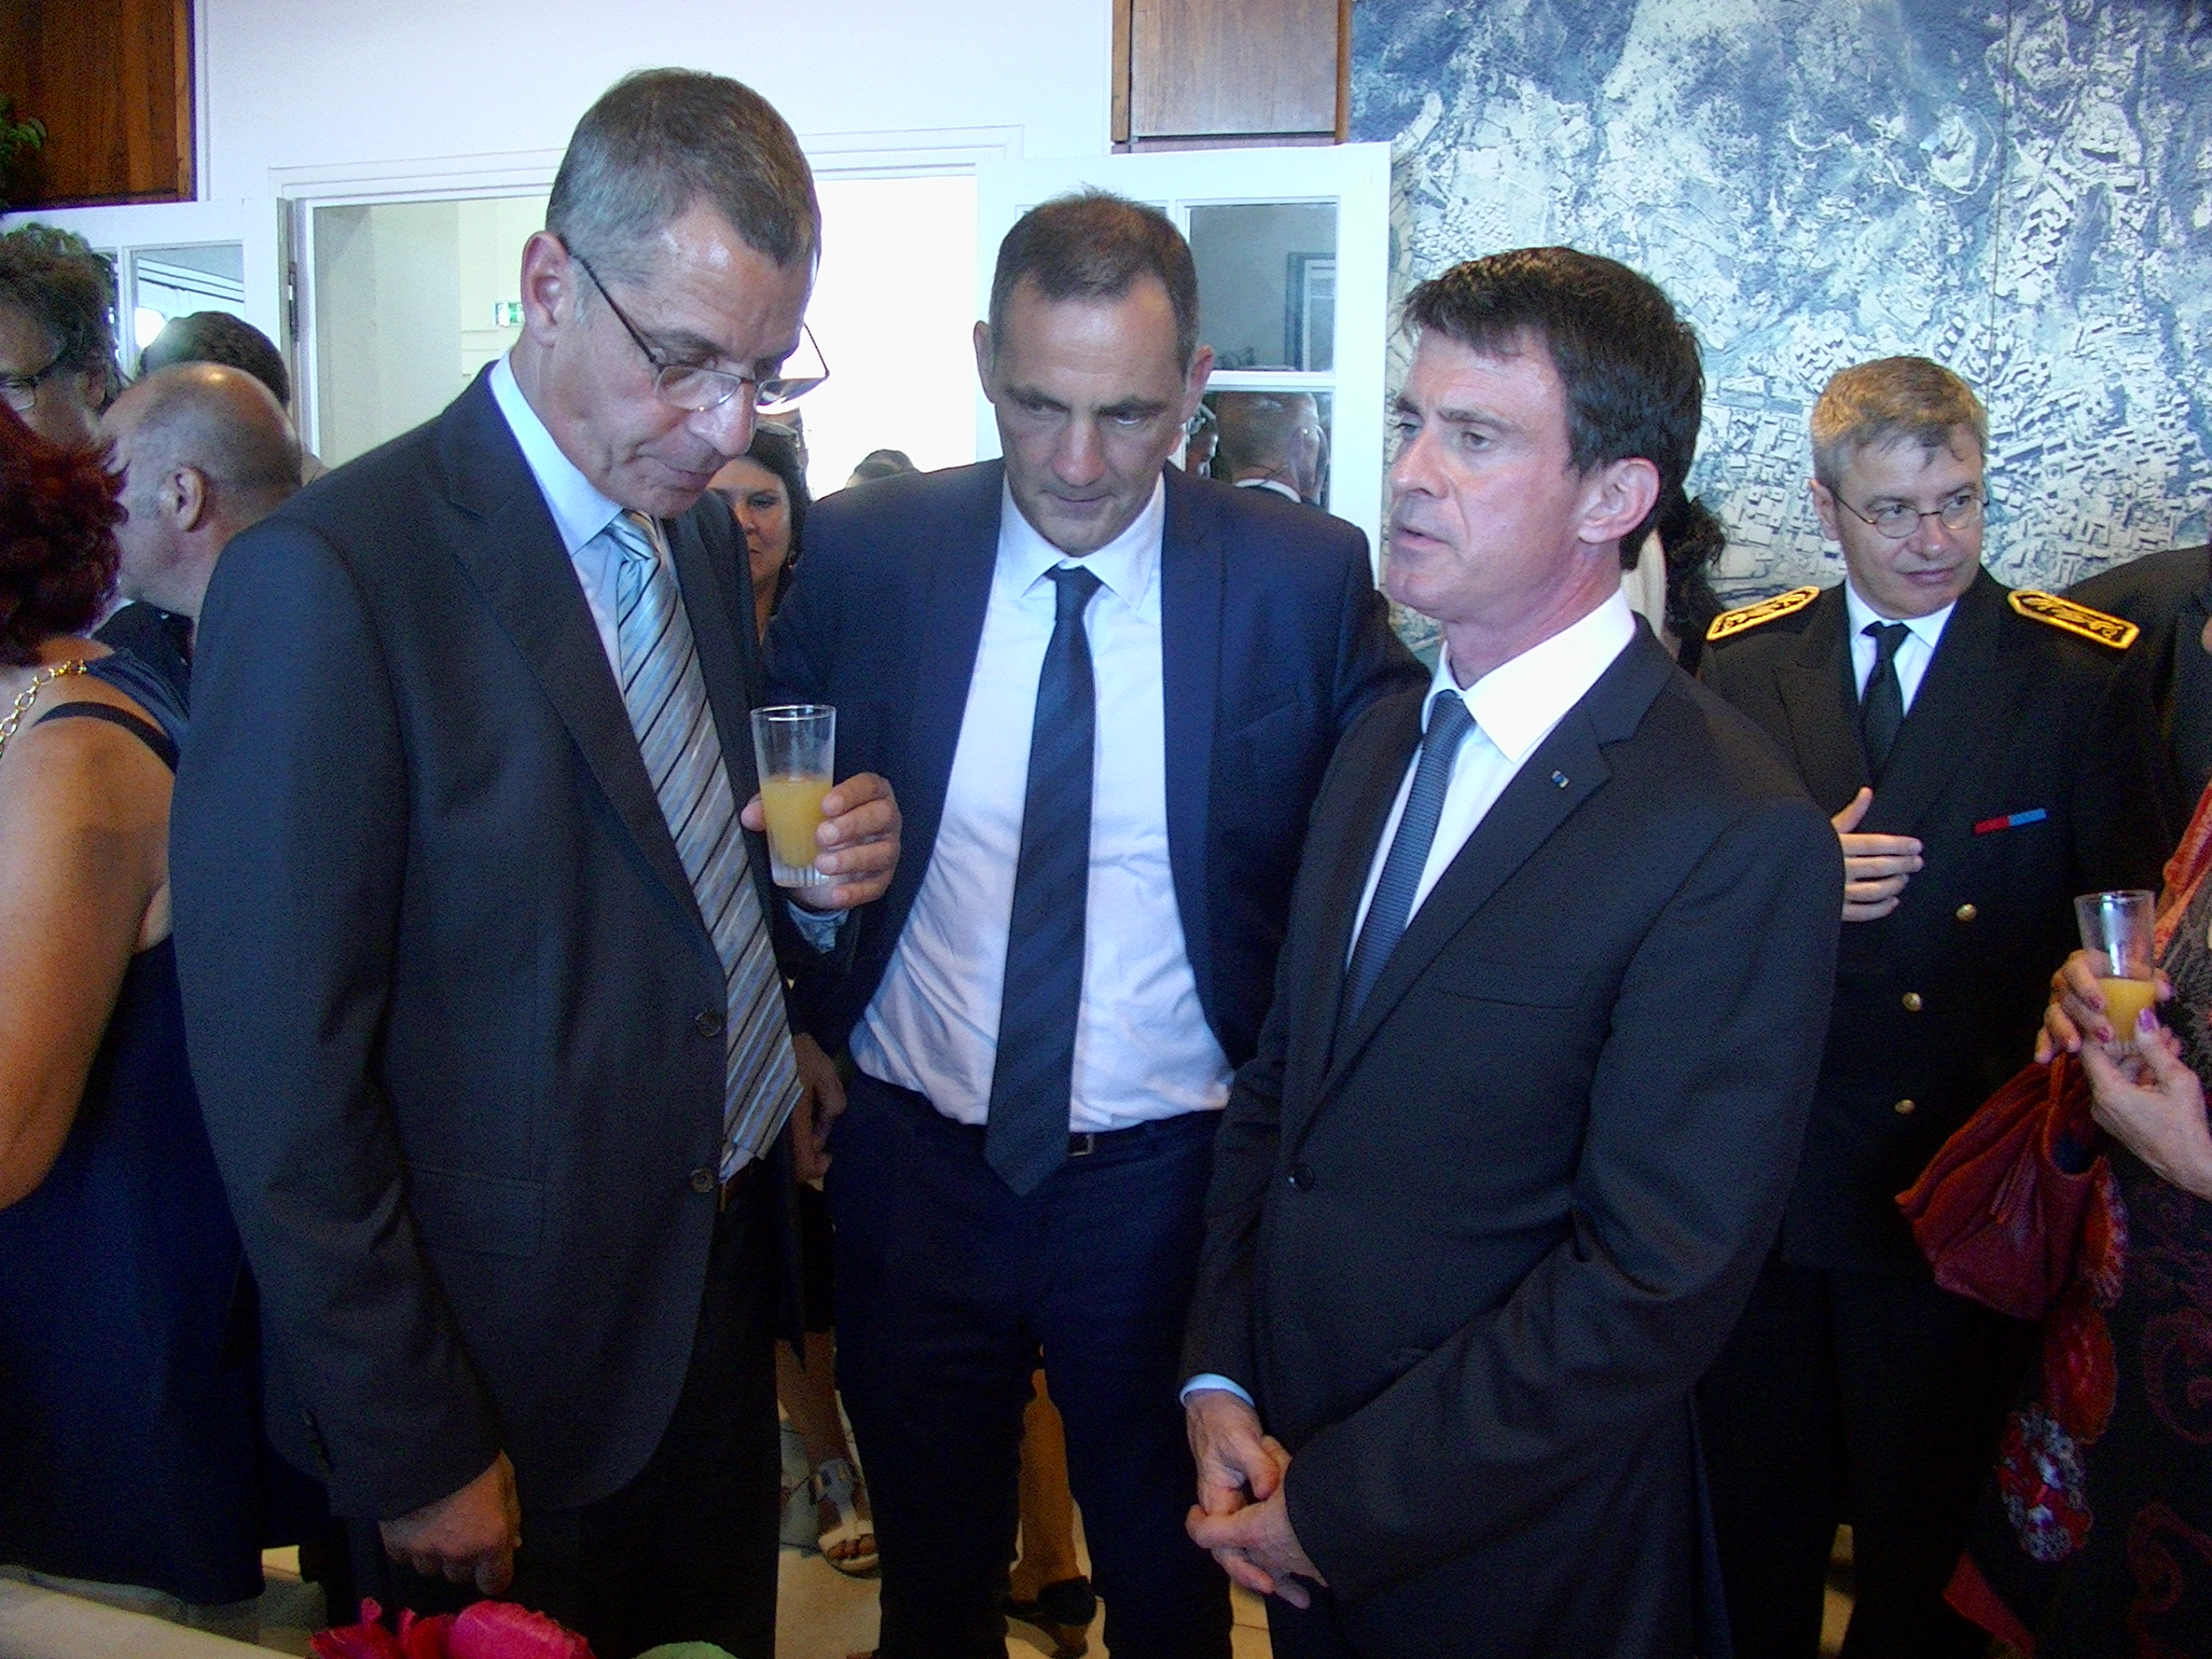 Manuel Valls accueilli par des sifflets à son arrivée à la mairie de Bastia